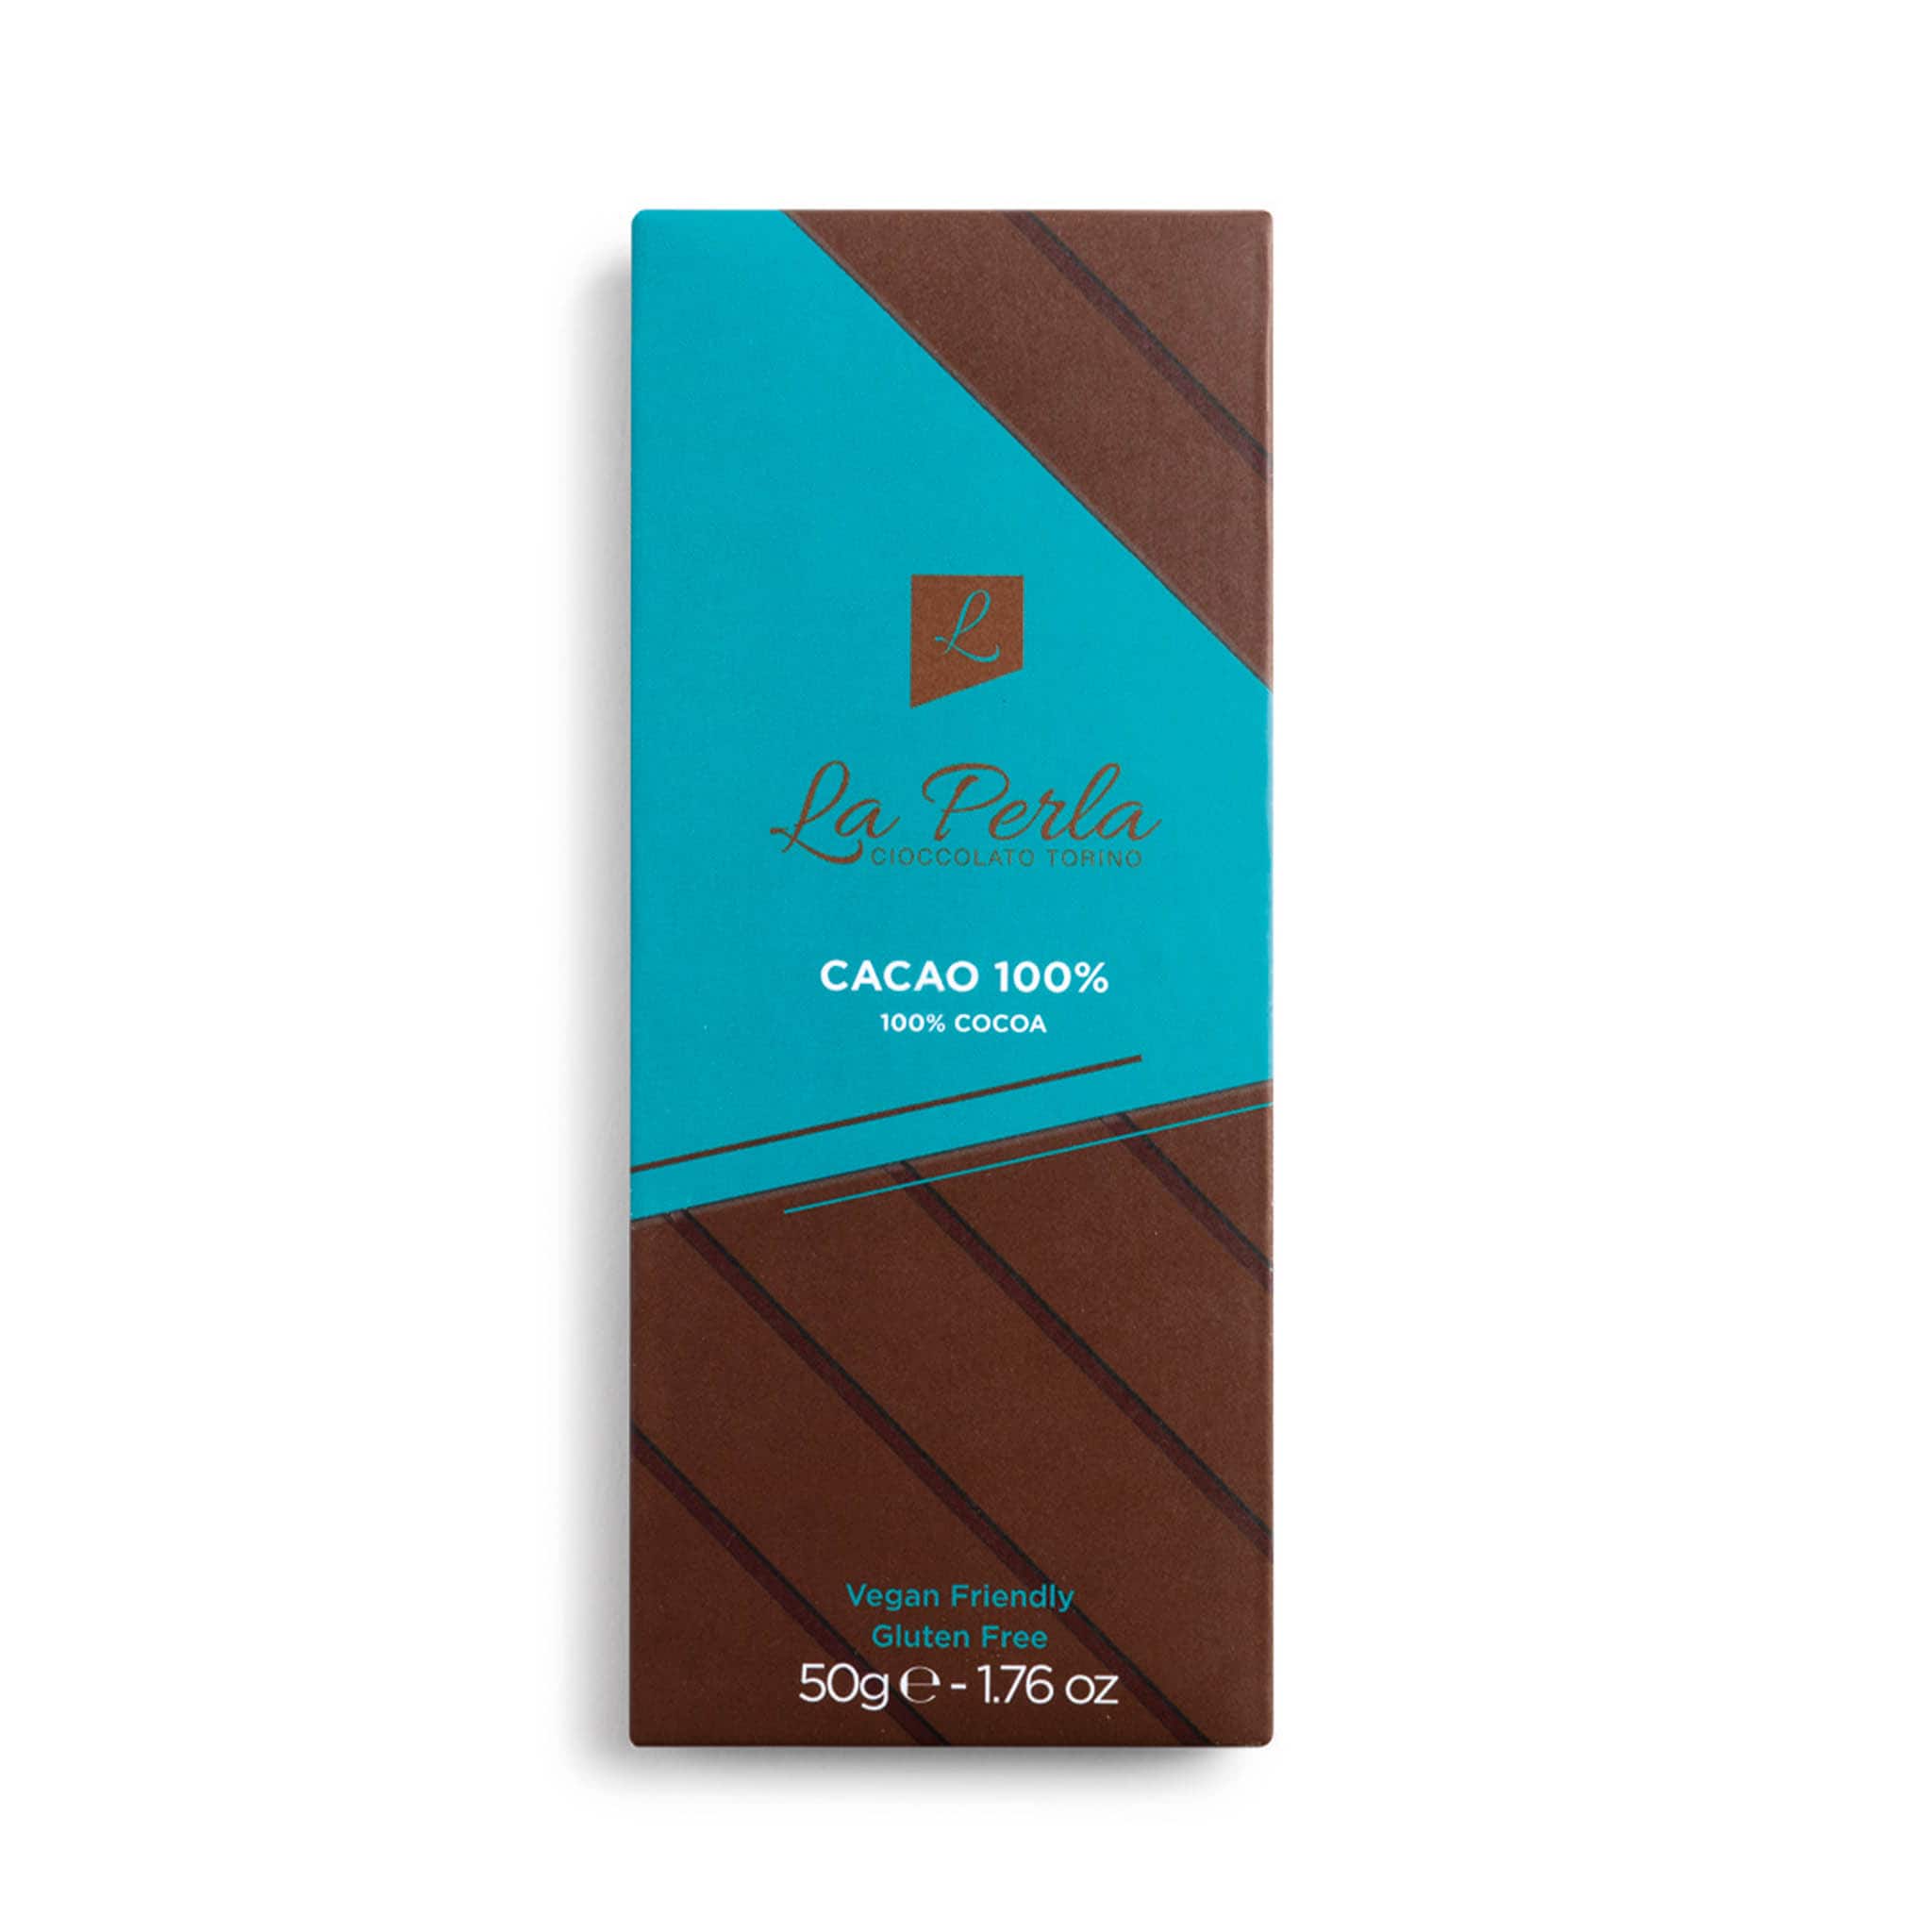 La Perla di Torino 100% Cocoa Chocolate Bar, 50g